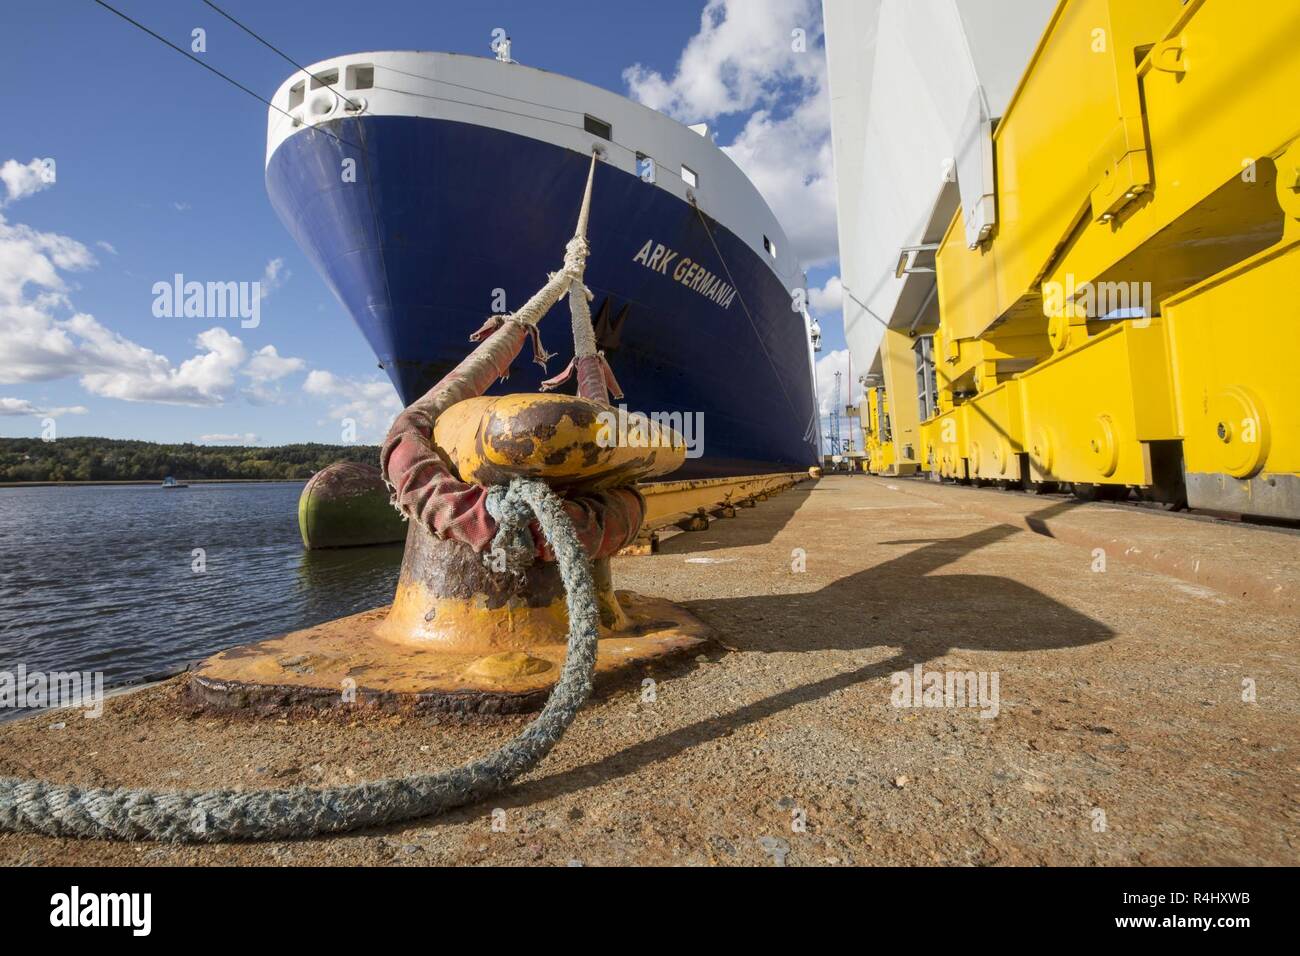 Danese di roll-on roll-off nave Arca Germania nel porto di Fredrikstad in Norvegia. Esercitazione NATO Trident Frangente in Norvegia, Fredrikstad su 28.09.2018. Foto Stock